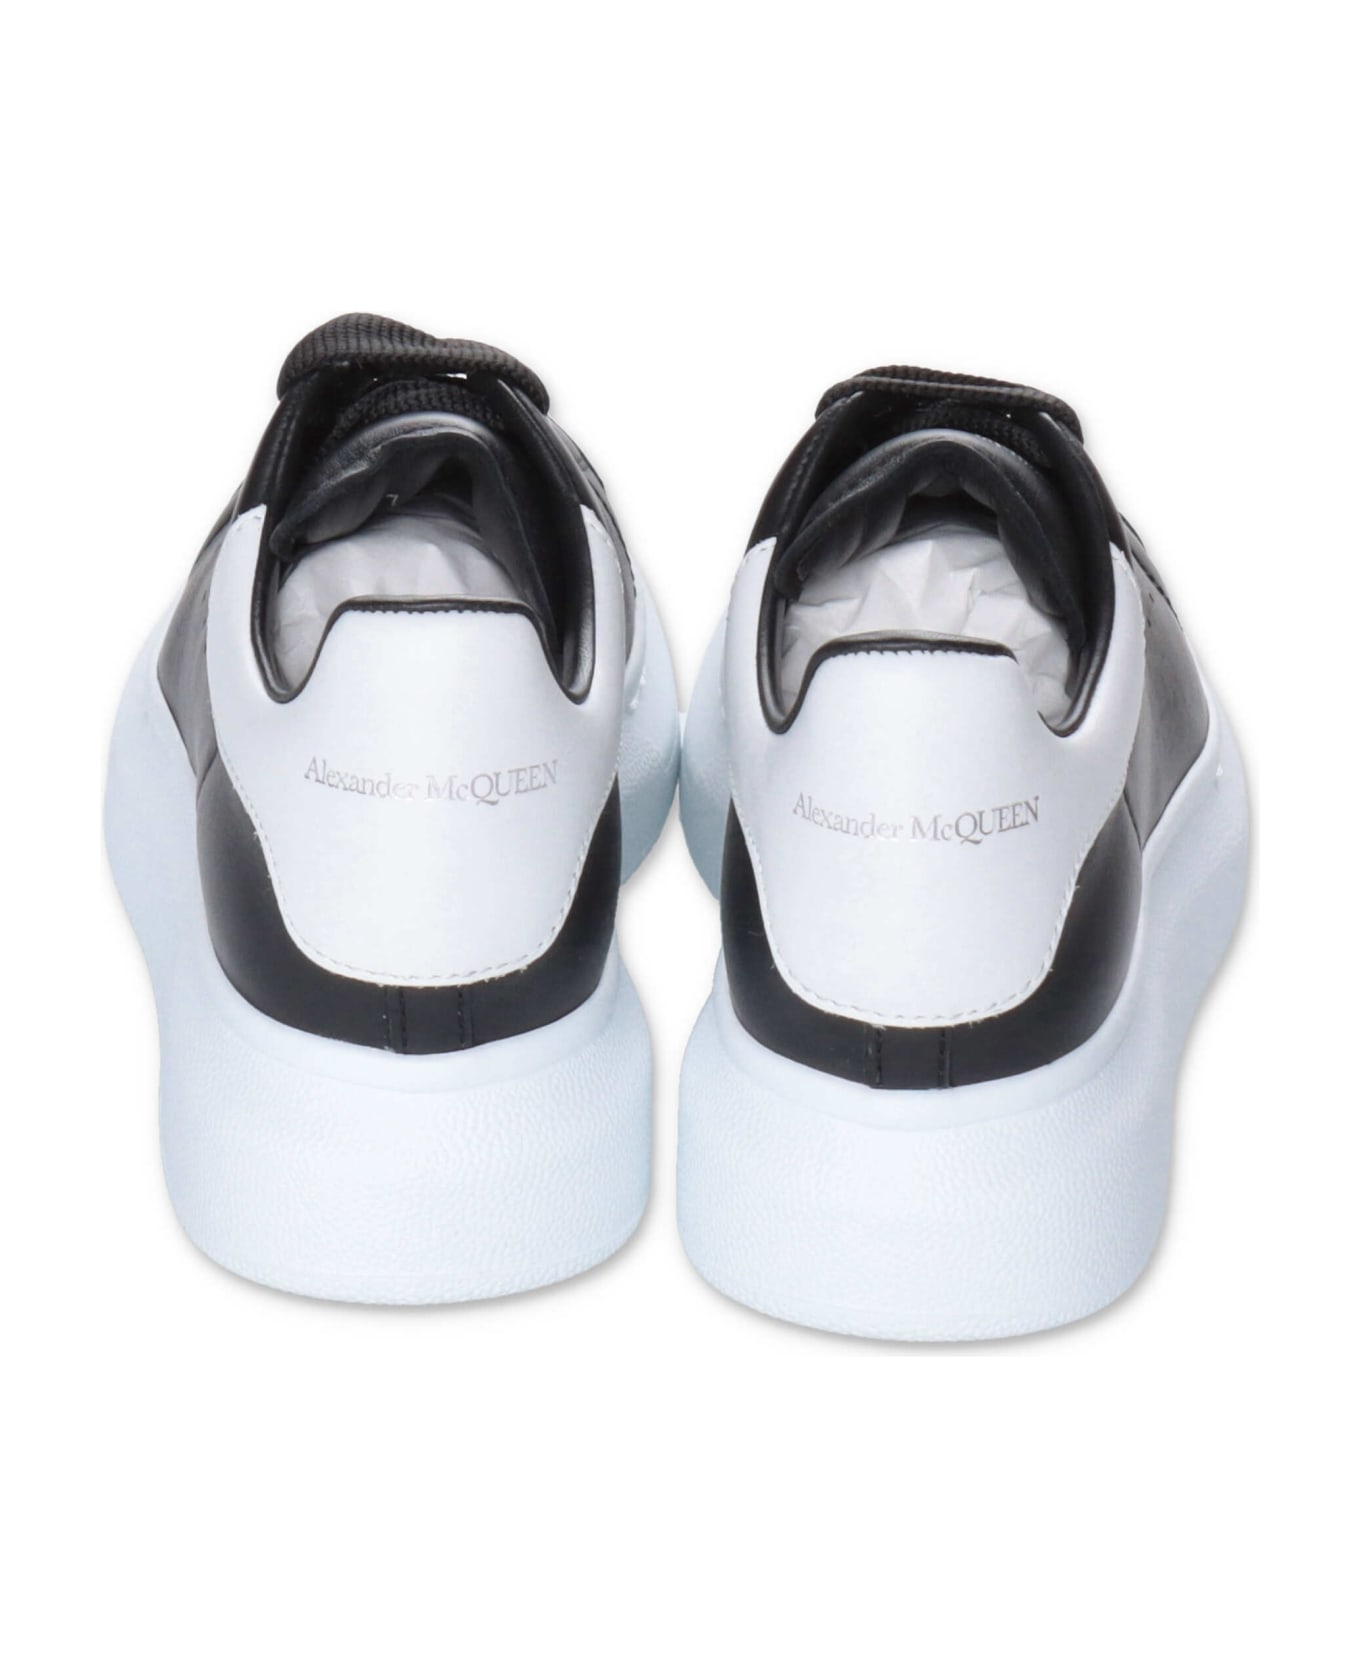 Alexander McQueen Sneakers Nere In Pelle Con Lacci Bambina - Nero